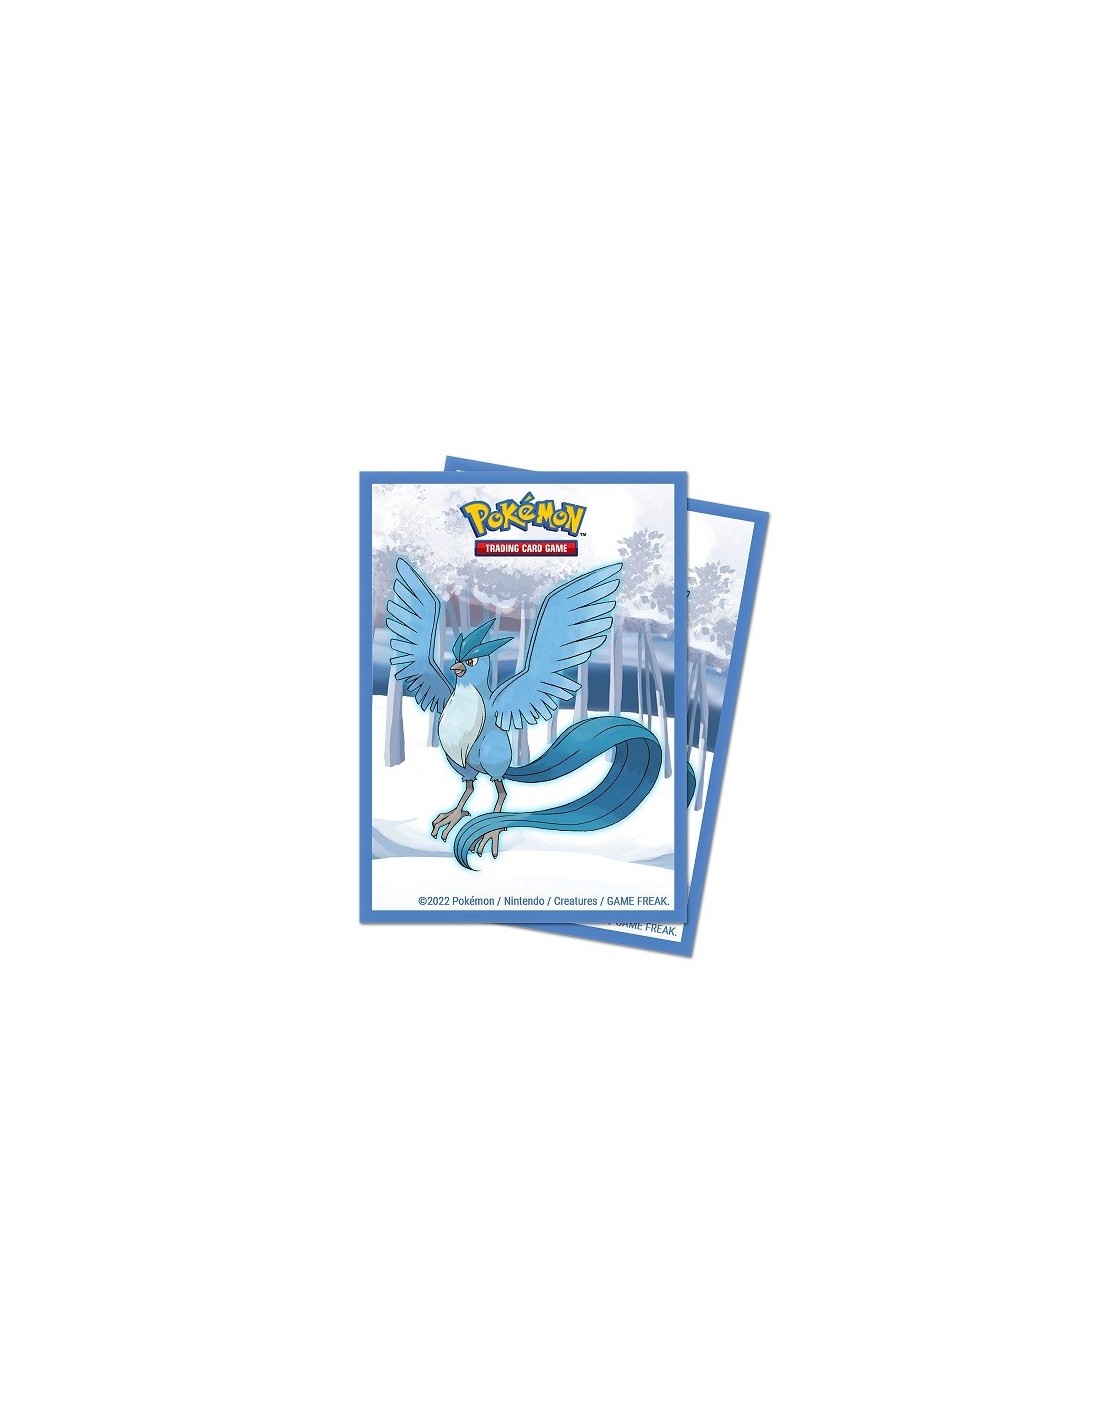 Brug Frosted Forest Gallery Series - Plastiklommer - Pokémon TCG - Ultra Pro til en forbedret oplevelse